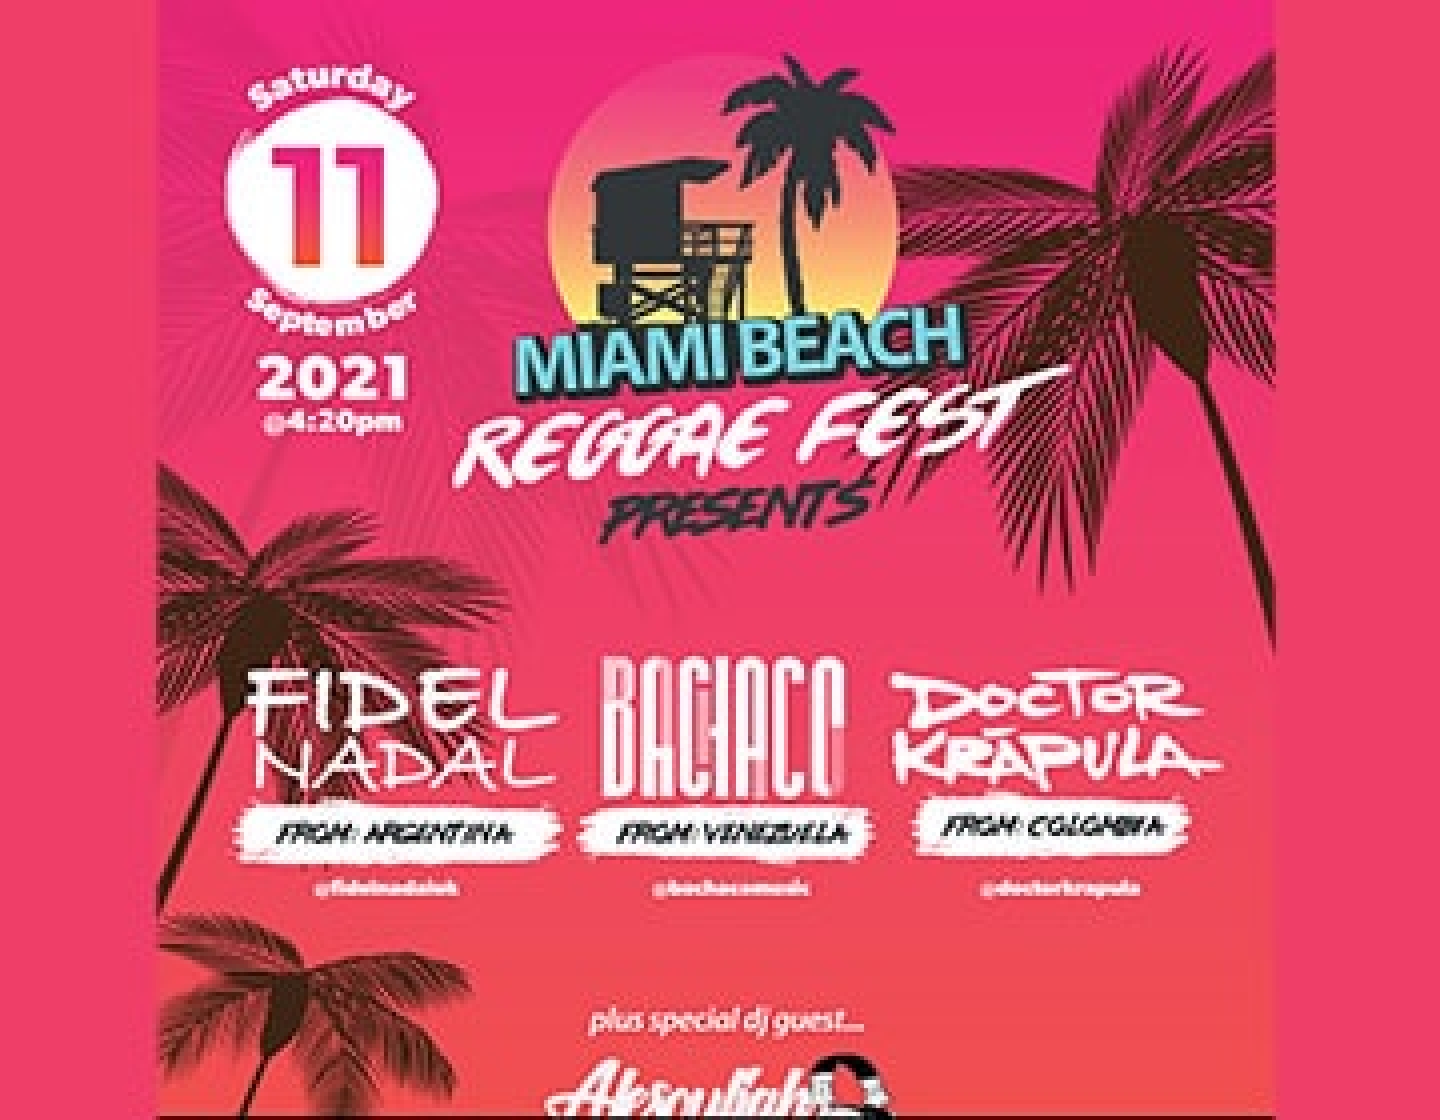 Miami Beach Reggae fest 2021